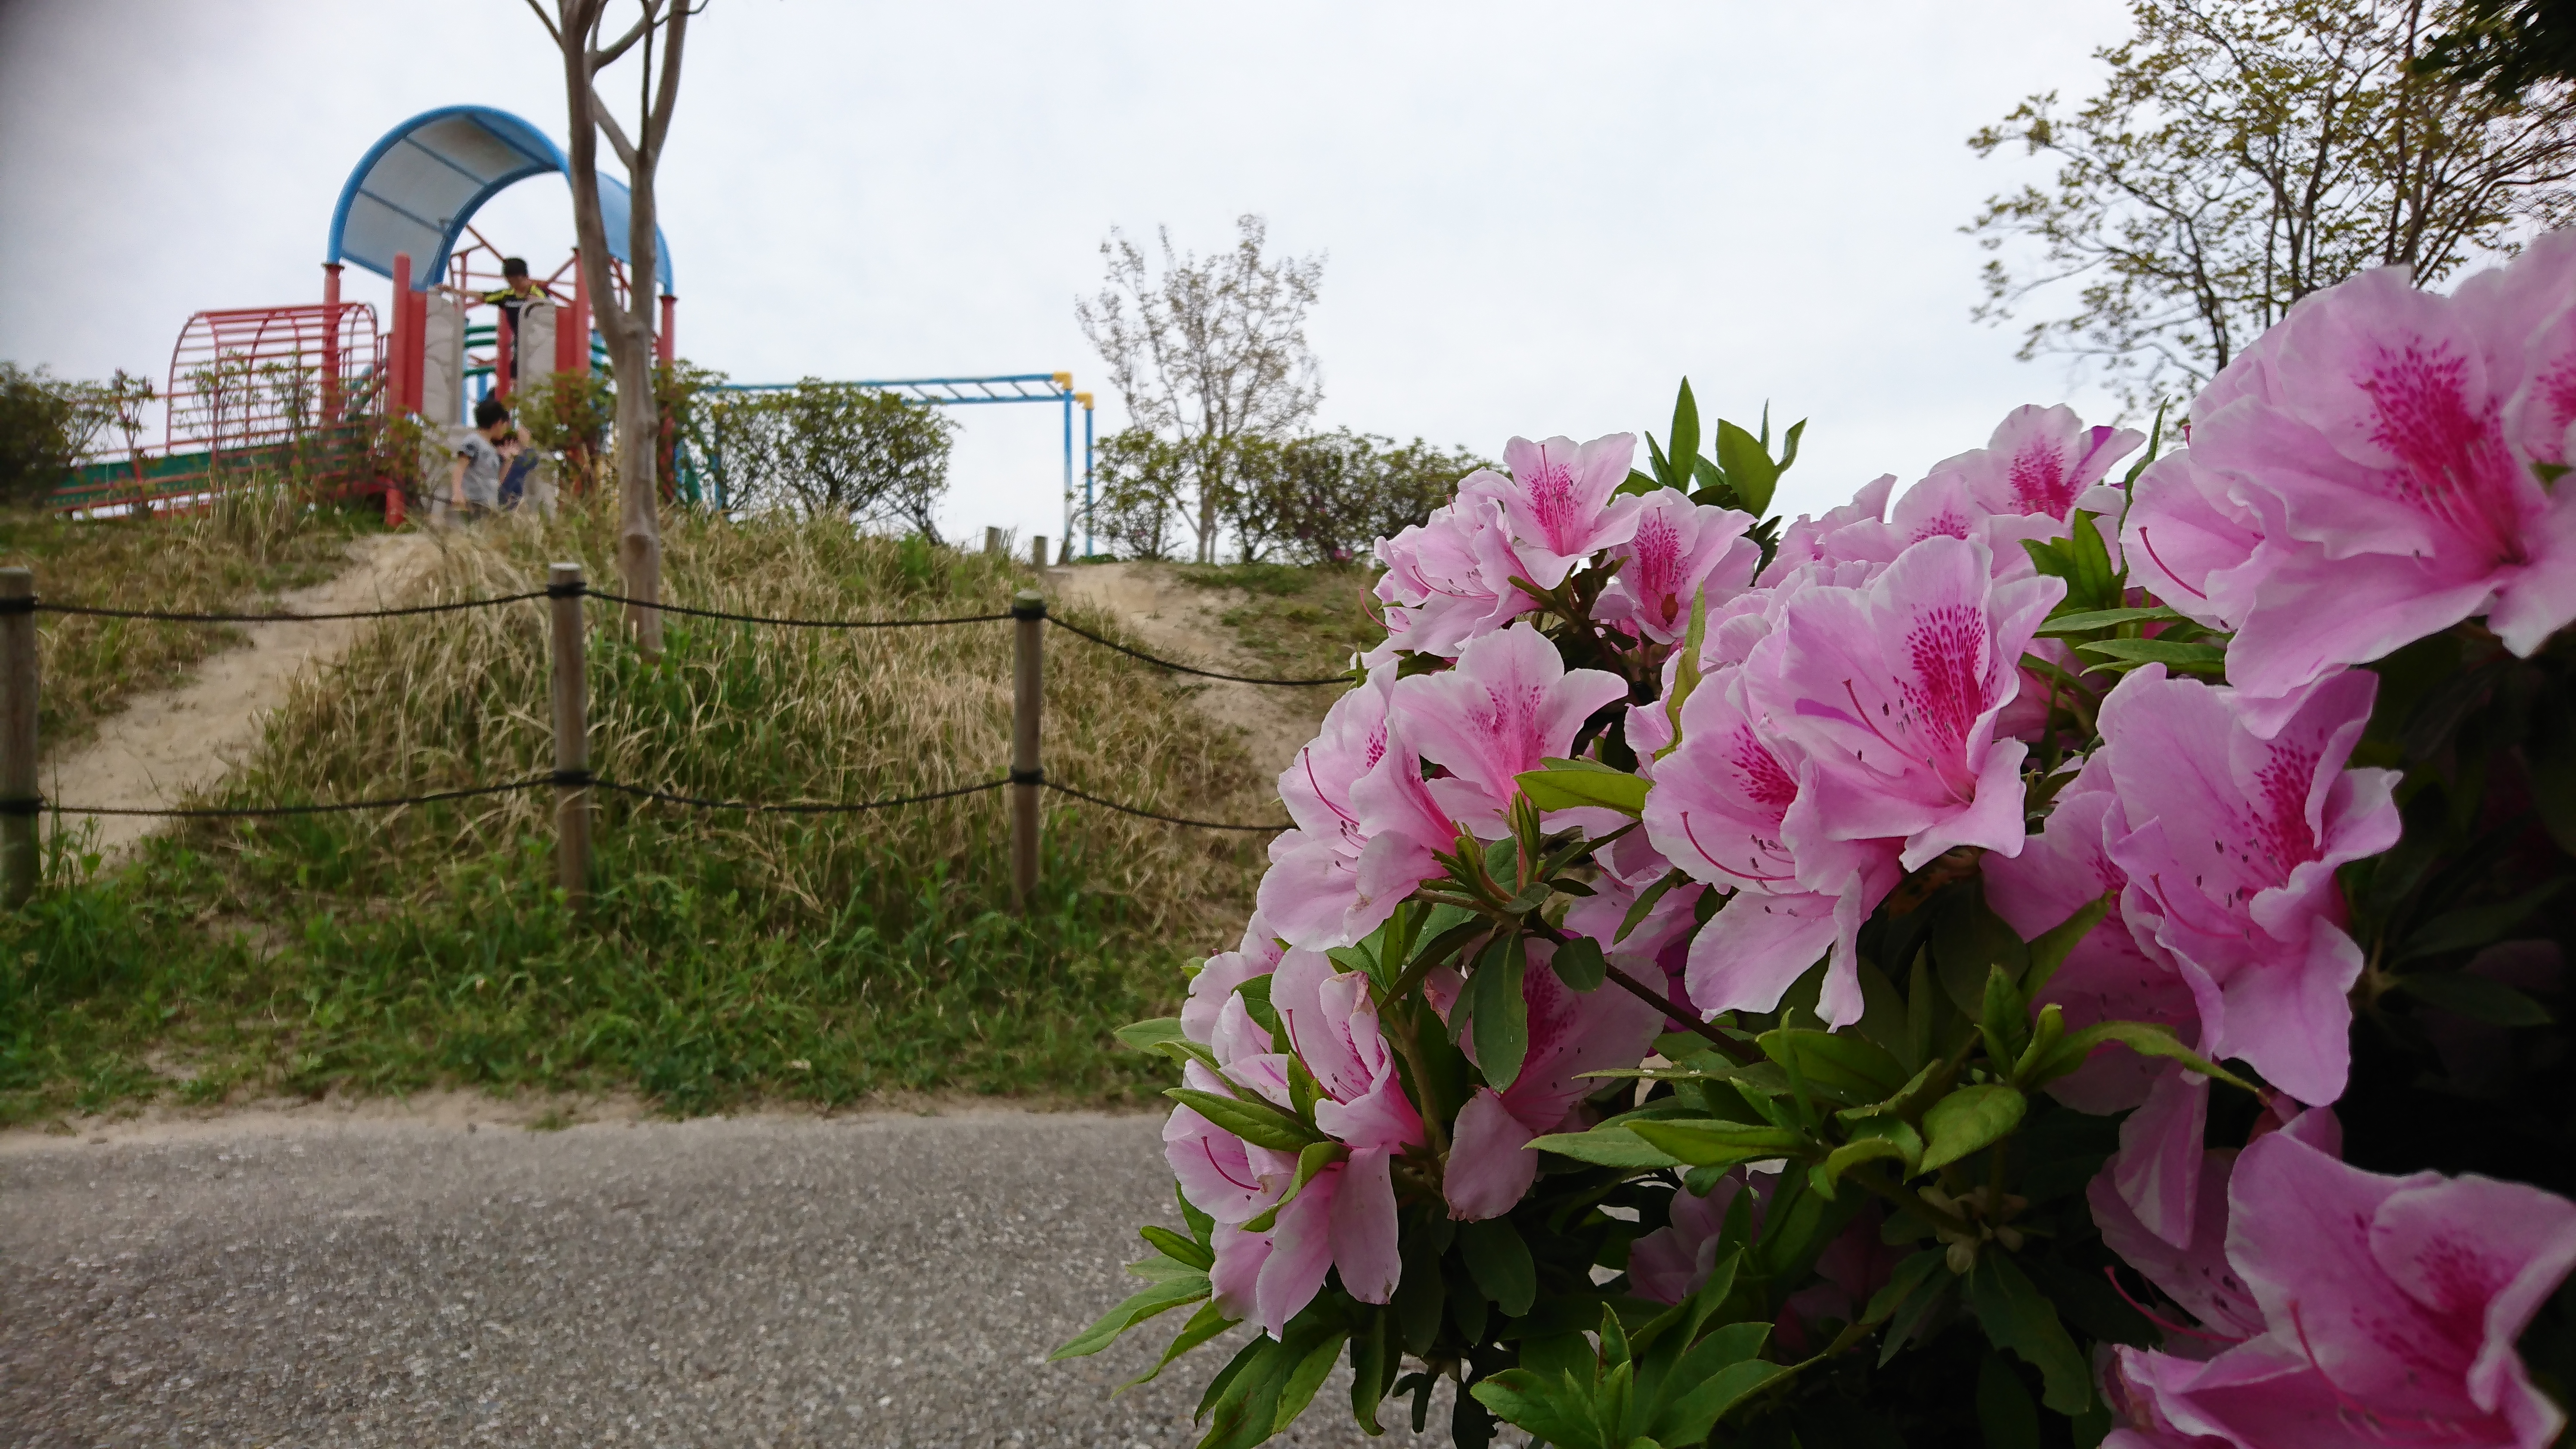 奈良井公園